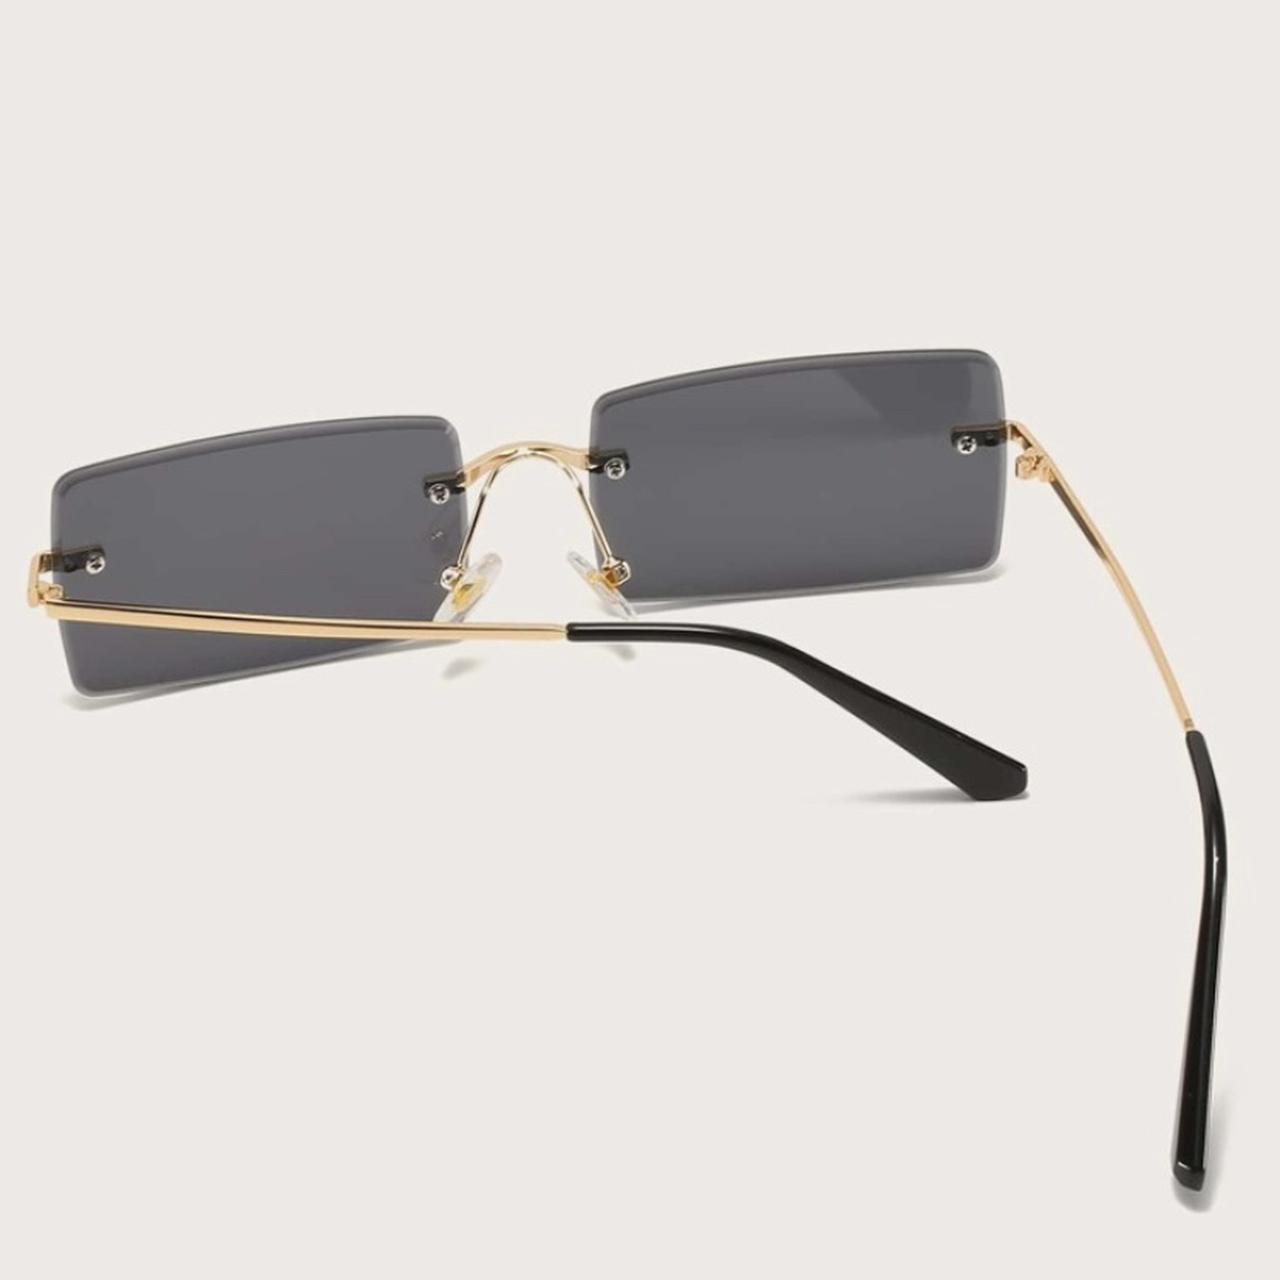 black sunglasses , #black #sunglasses #glasses